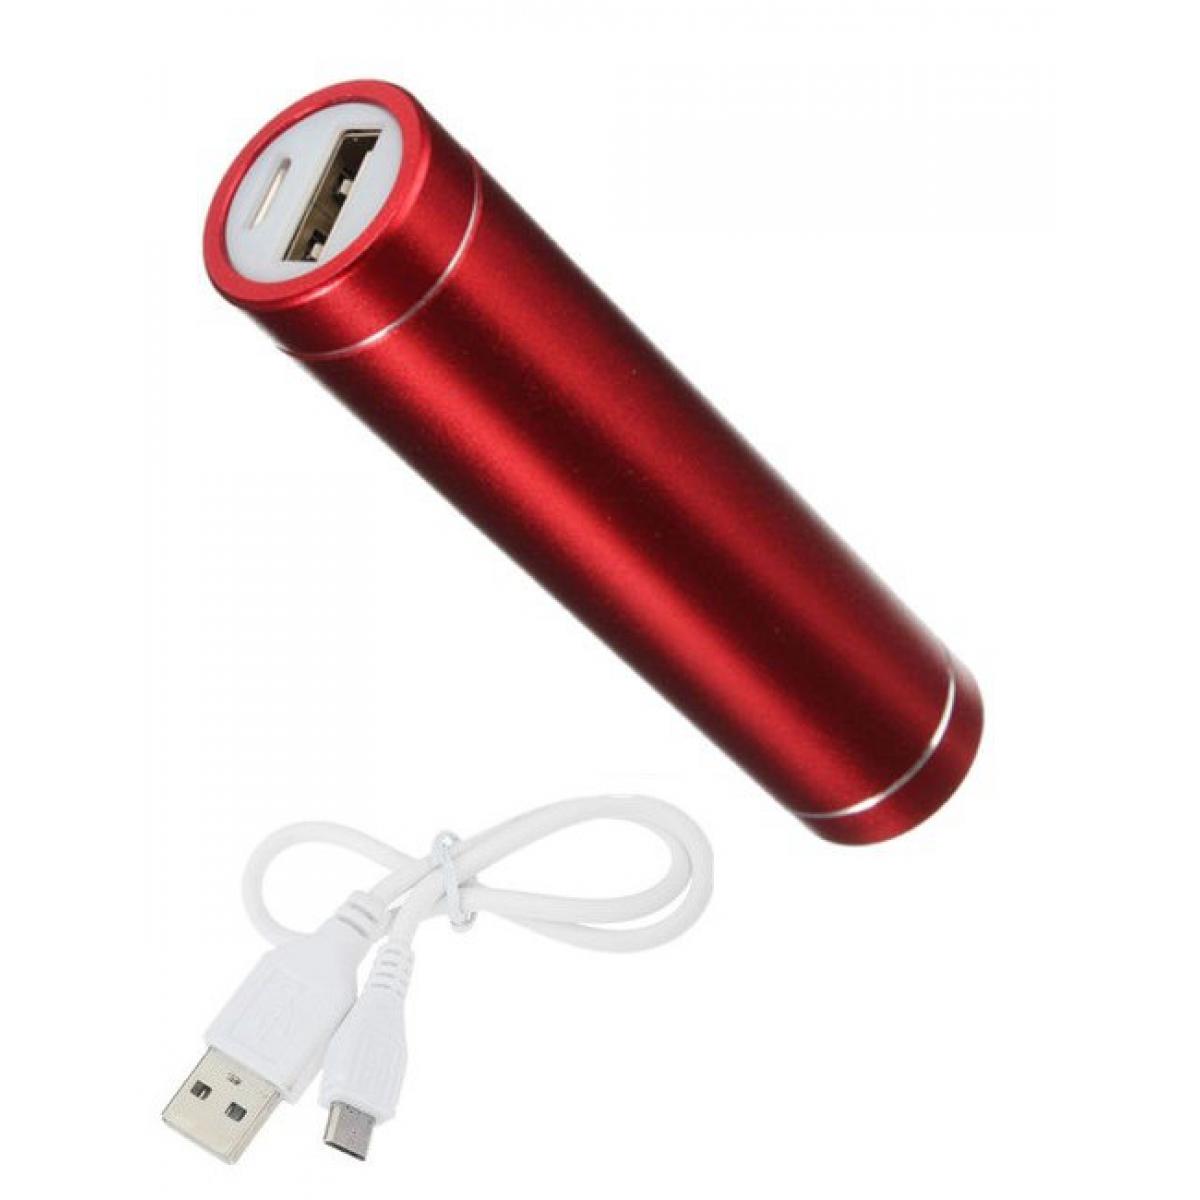 Shot - Batterie Chargeur Externe pour XIAOMI Redmi 9C Power Bank 2600mAh avec Cable USB/Mirco USB Secours Telephon (ROUGE) - Chargeur secteur téléphone